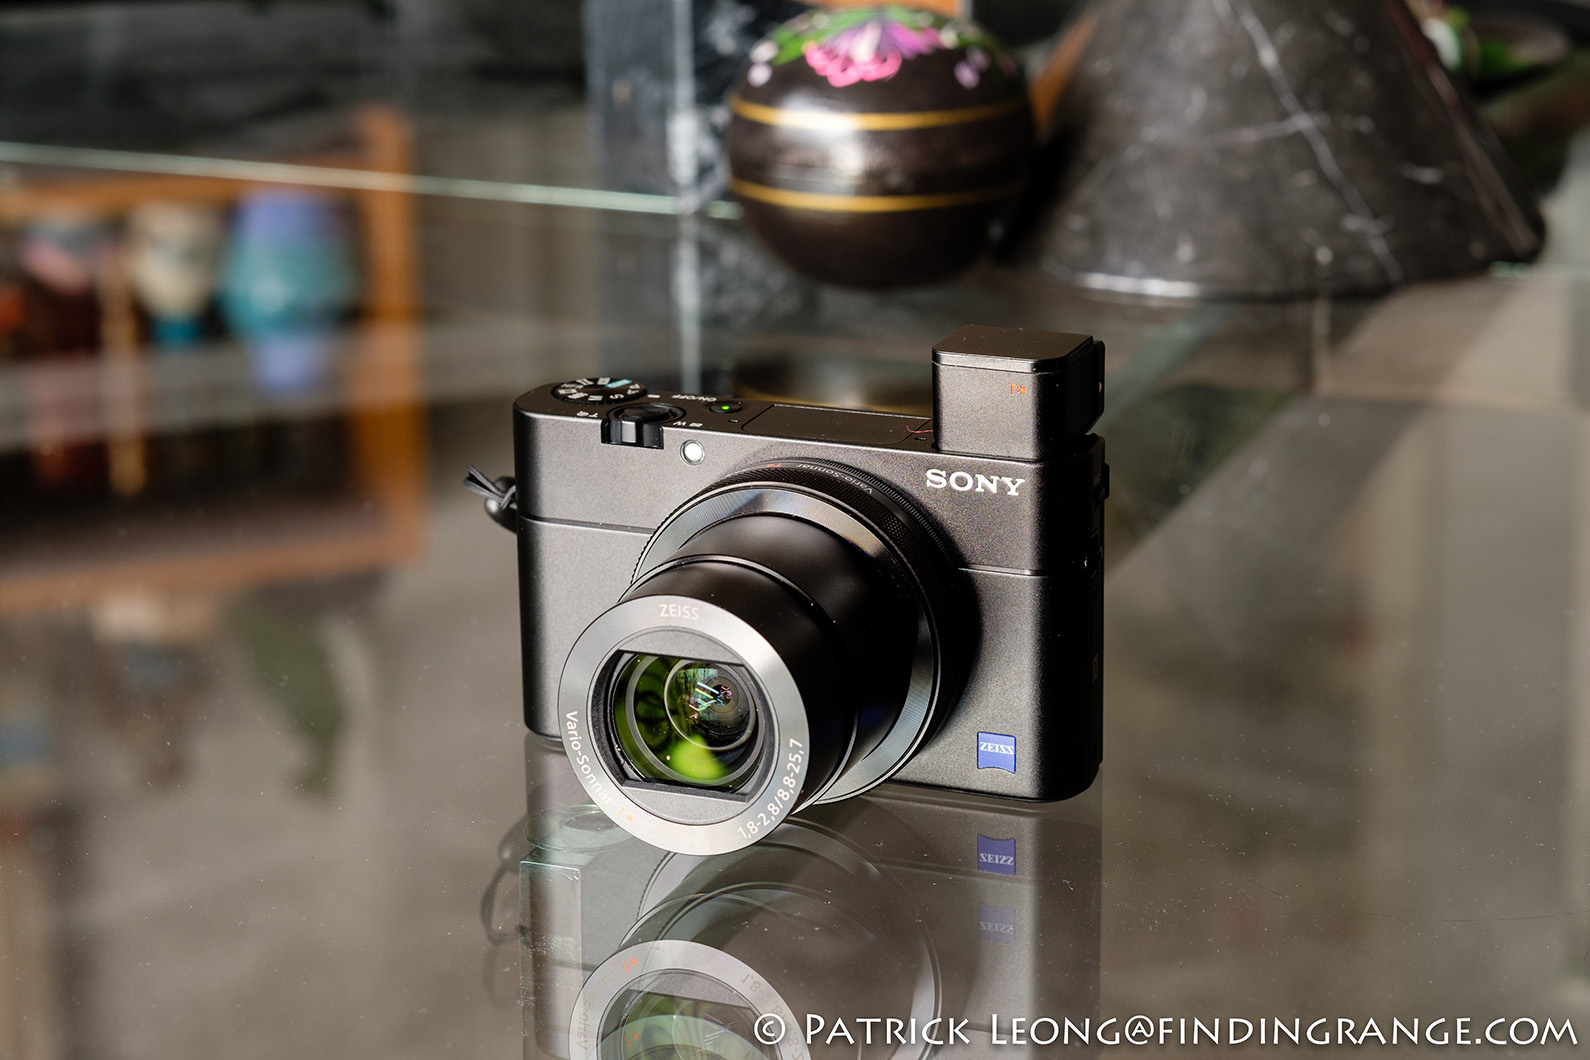 Sony RX100 V Camera Review